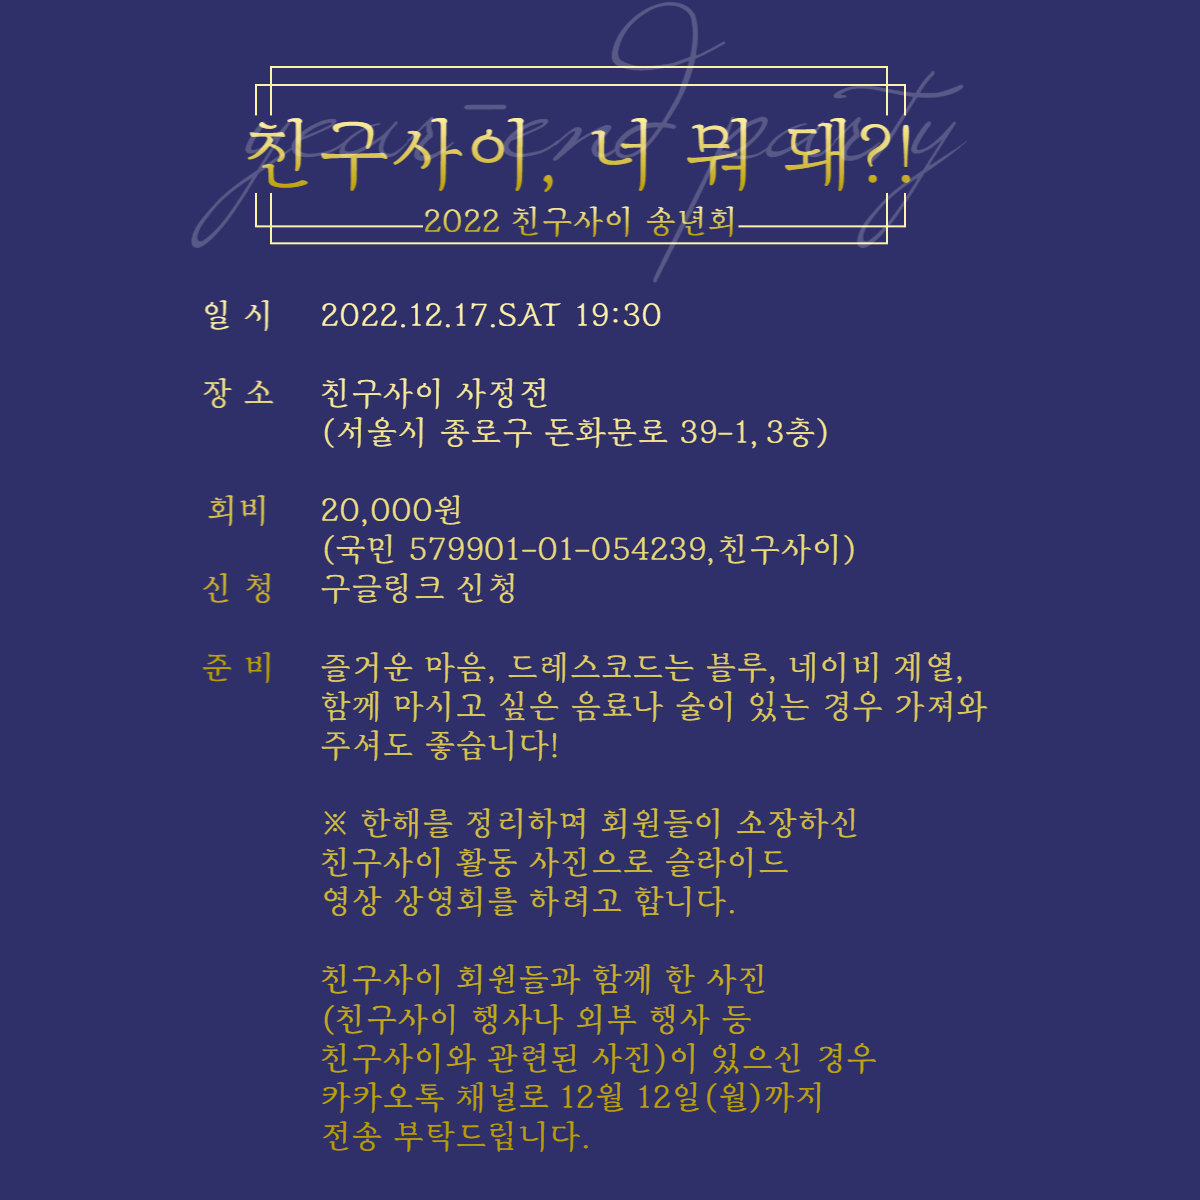 2022친구사이송년회홍보-003 (3).png